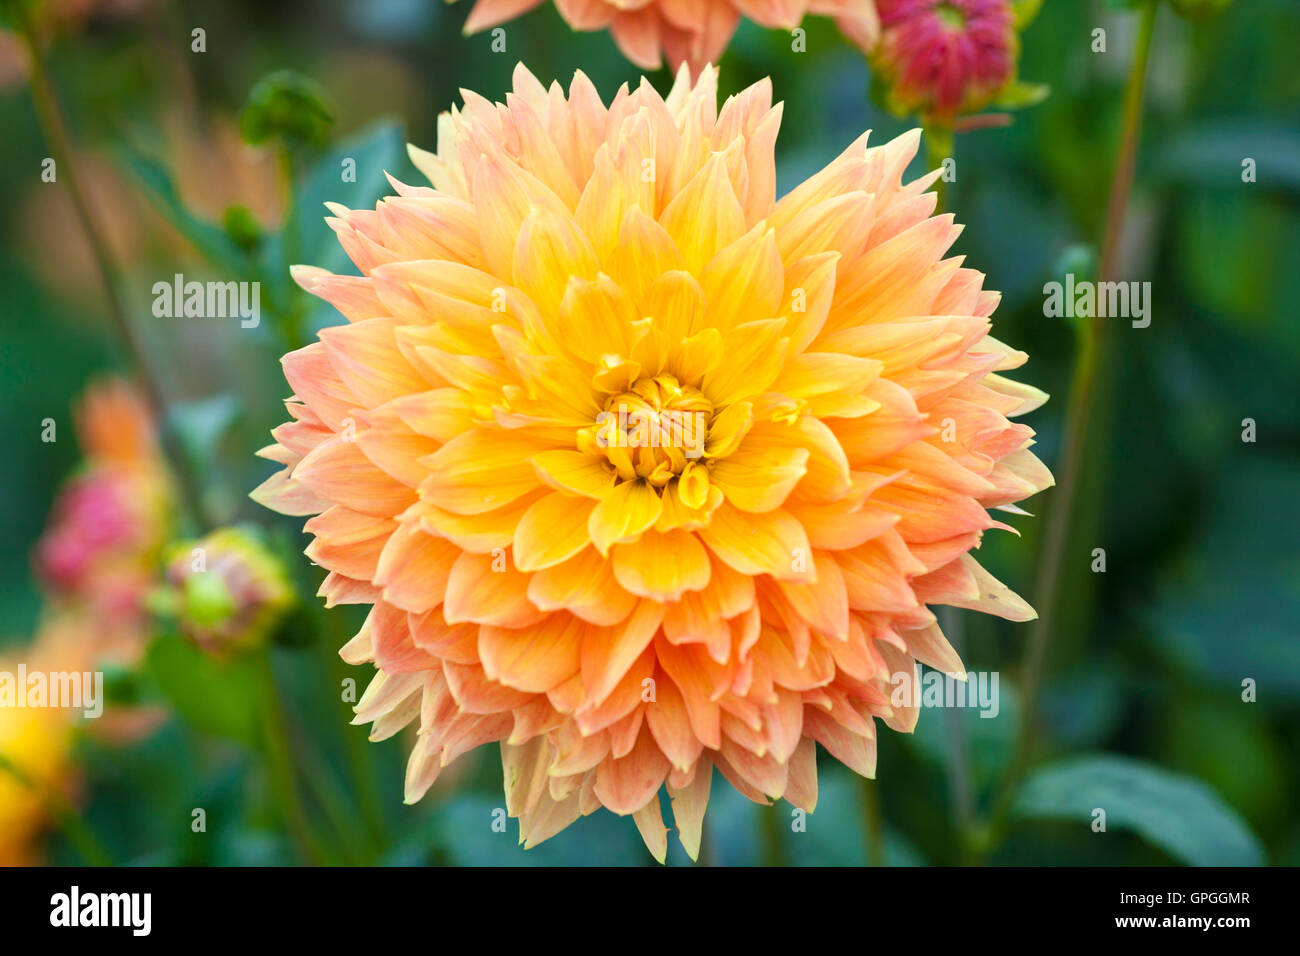 Dalia flores naranjas y amarillas plena floración closeup Foto de stock